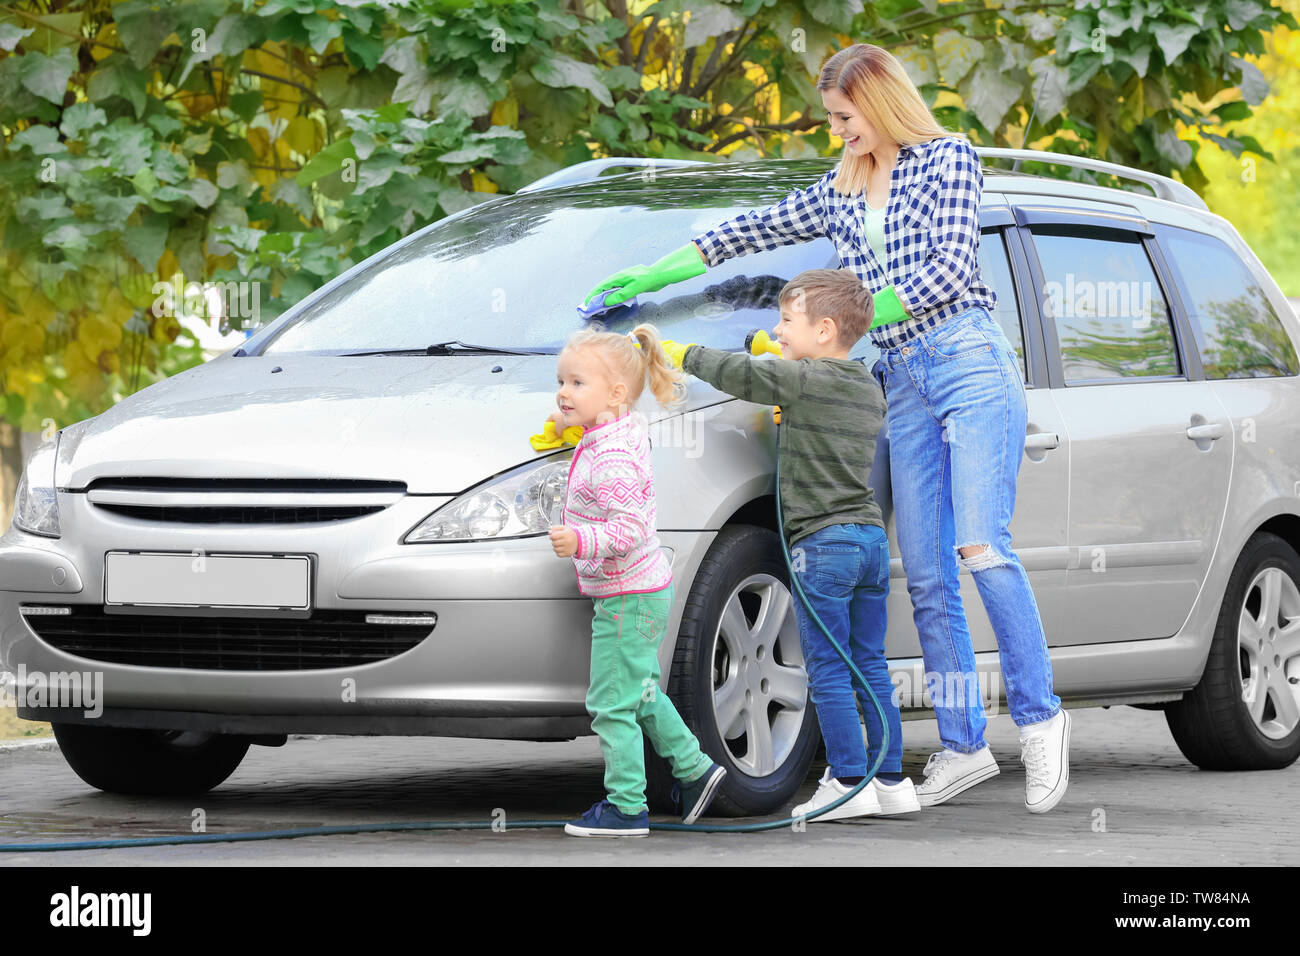 Limpiar el coche con nuestros hijos